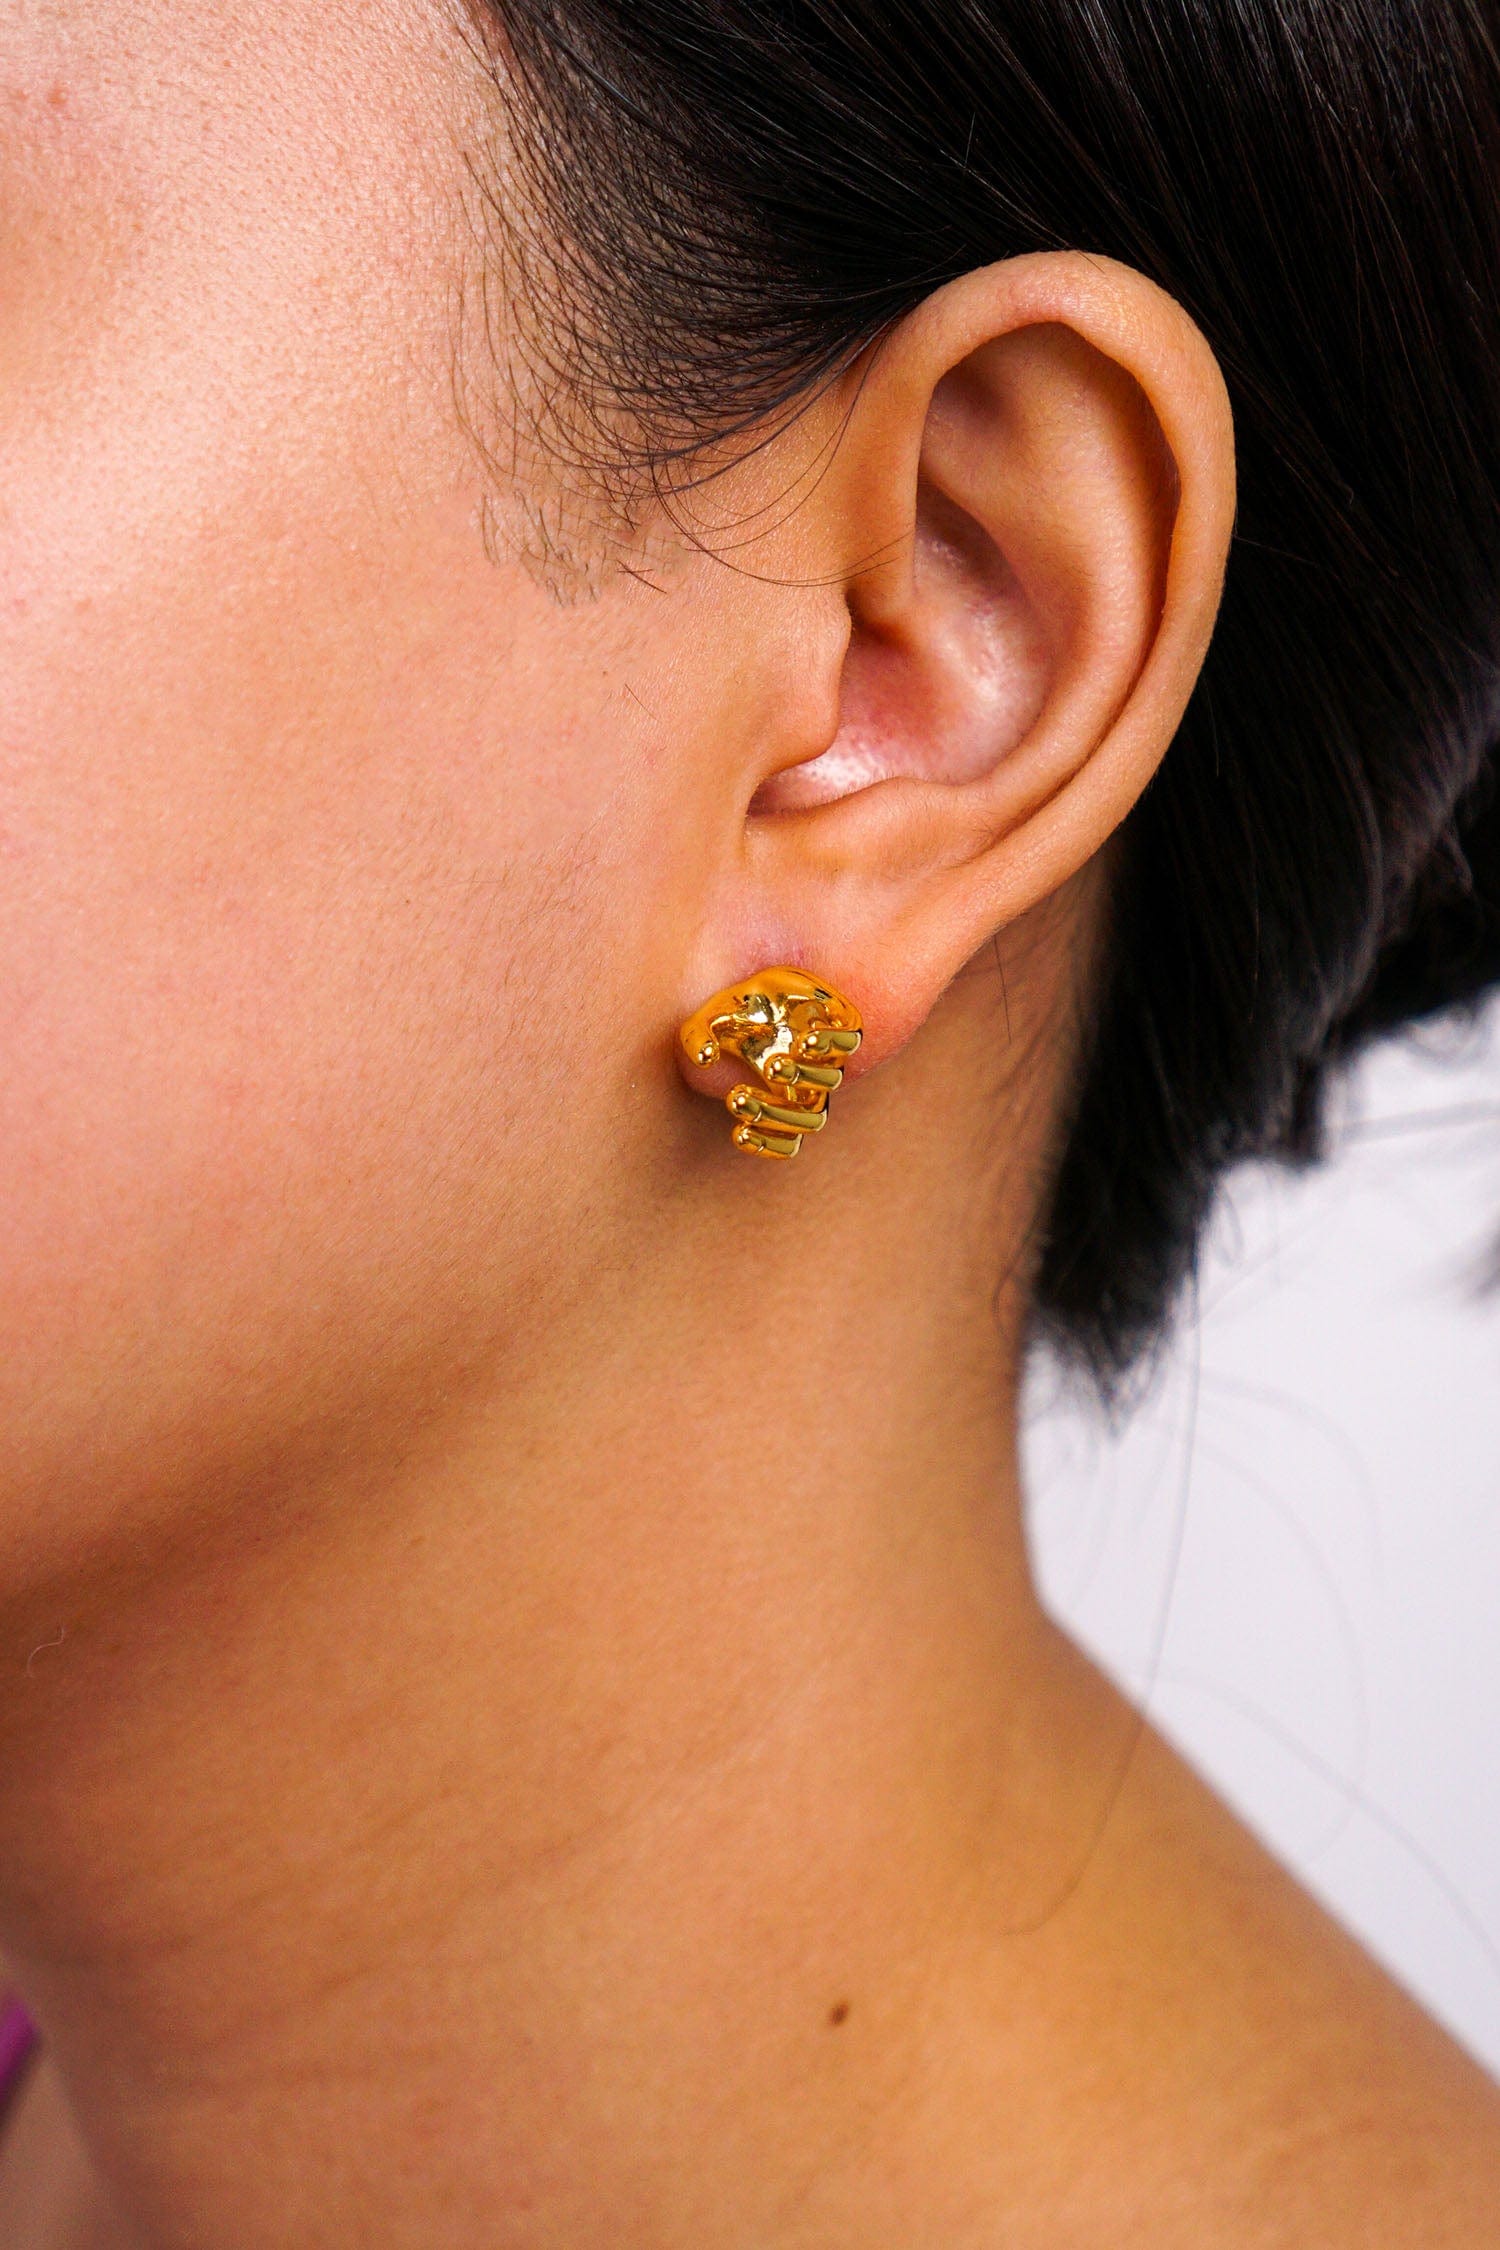 DCD EARRINGS Gold Geometric Hand Stud Earrings